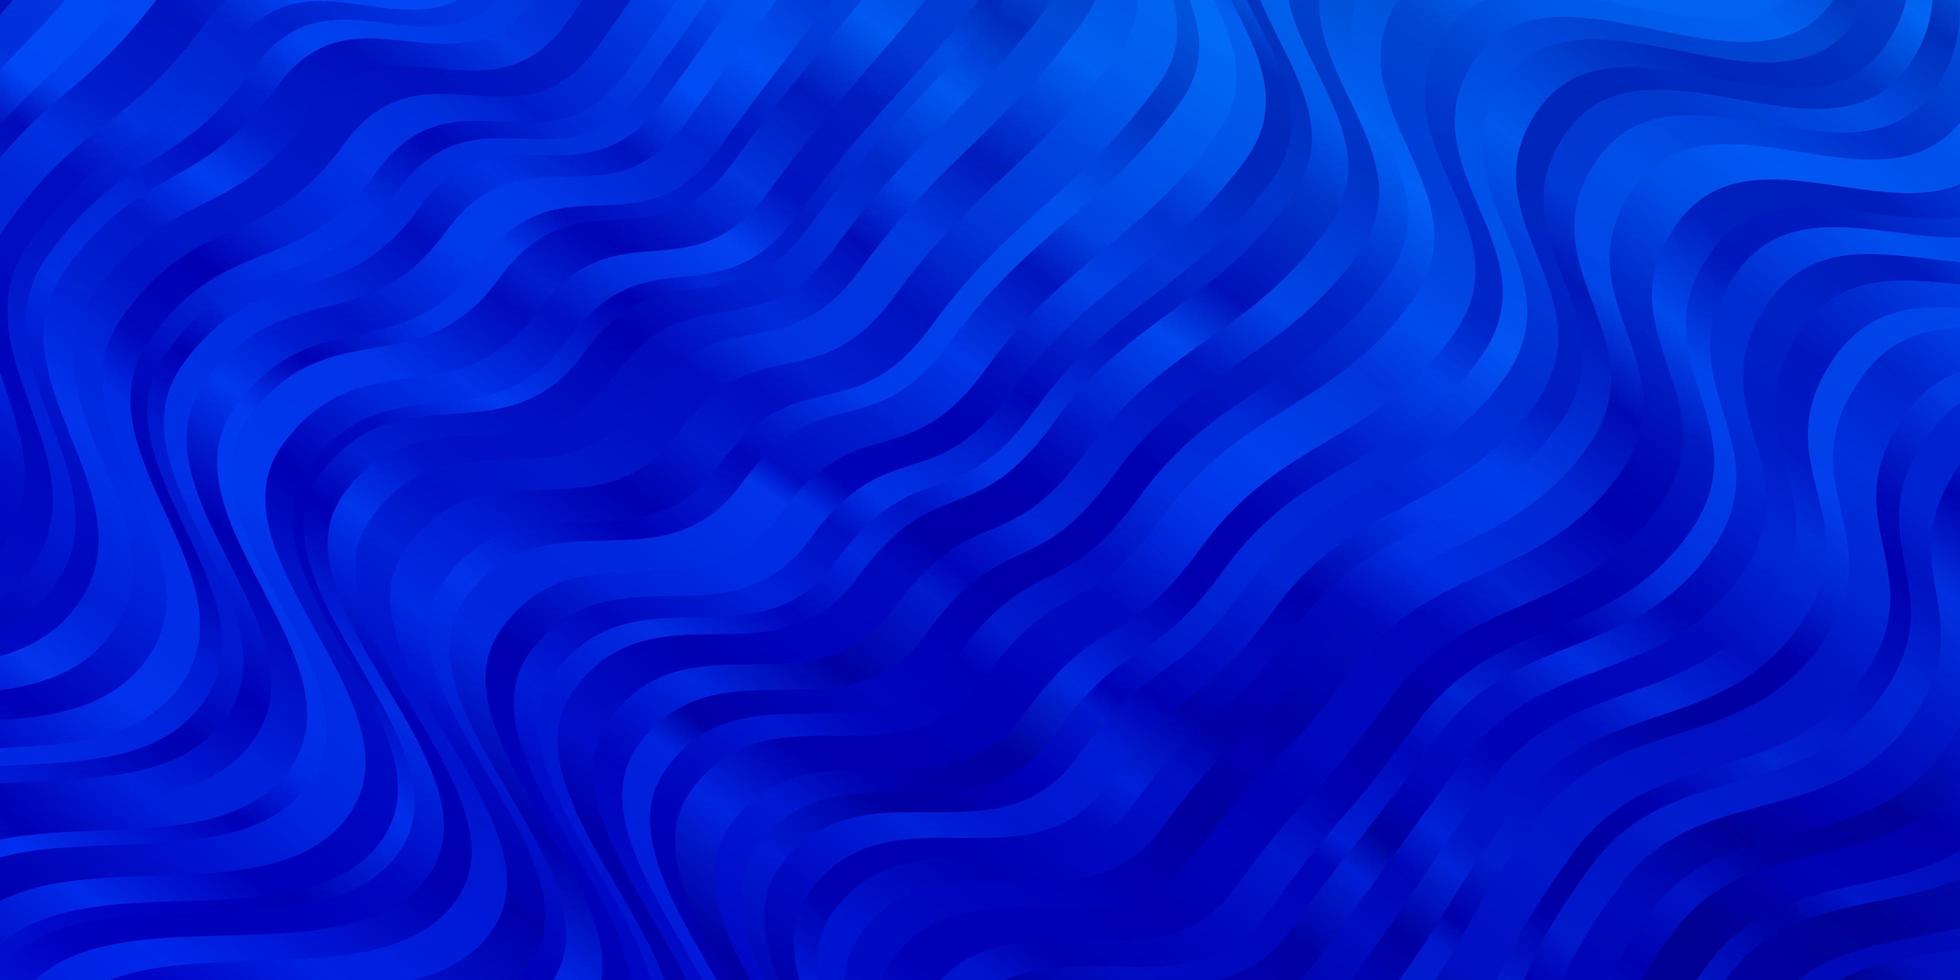 sfondo vettoriale azzurro con linee gradiente illustrazione in stile semplice con motivo a fiocchi per annunci pubblicitari